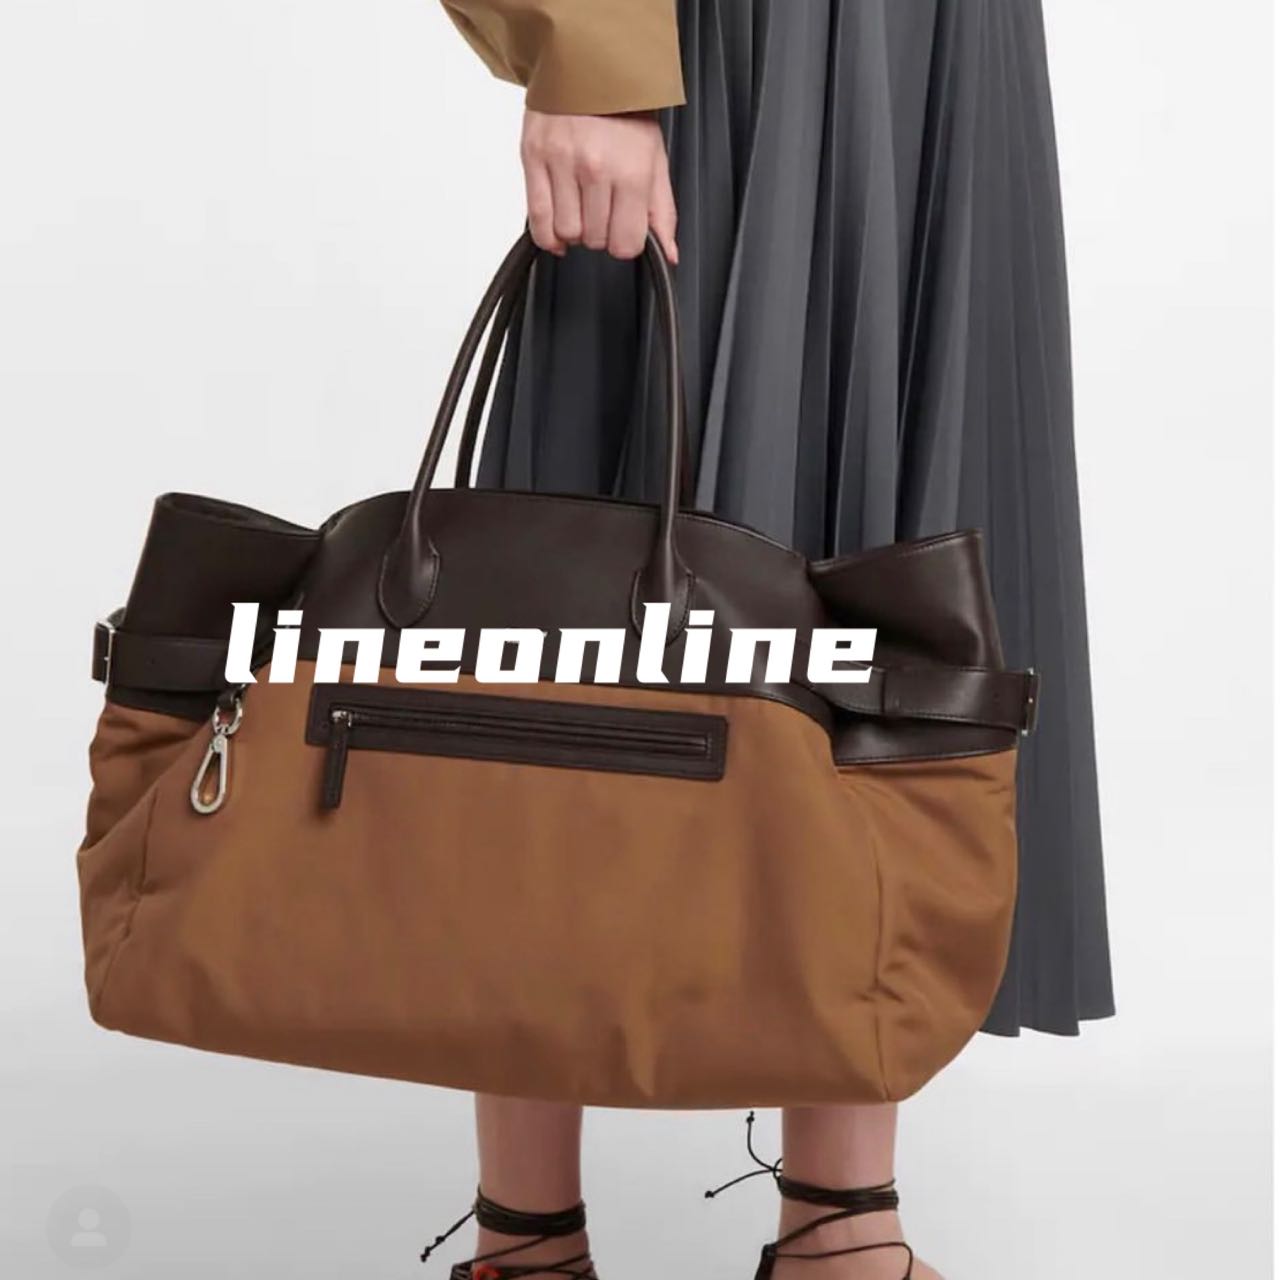 lineonline 全新自制无标款margaux17尼龙布拼真皮旅行袋手提包 箱包皮具/热销女包/男包 通用款女包 原图主图